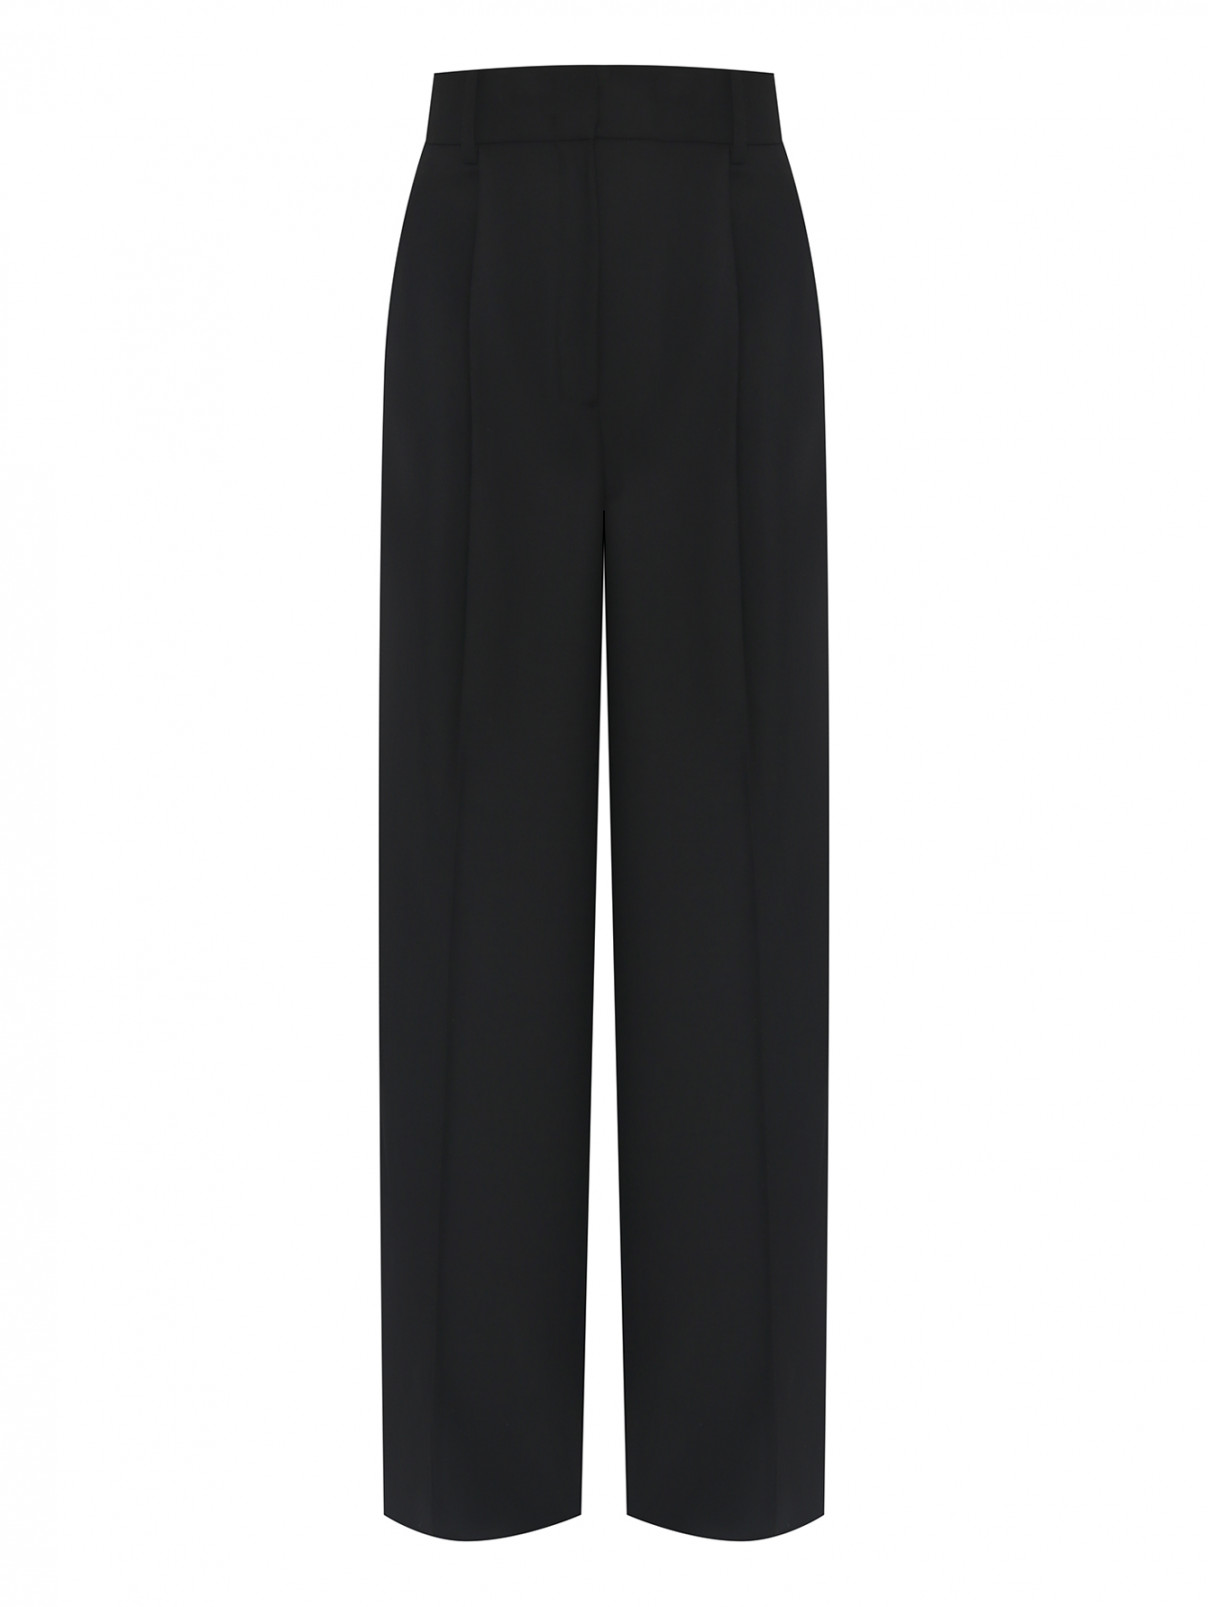 Широкие брюки из смешанной шерсти Dorothee Schumacher  –  Общий вид  – Цвет:  Черный